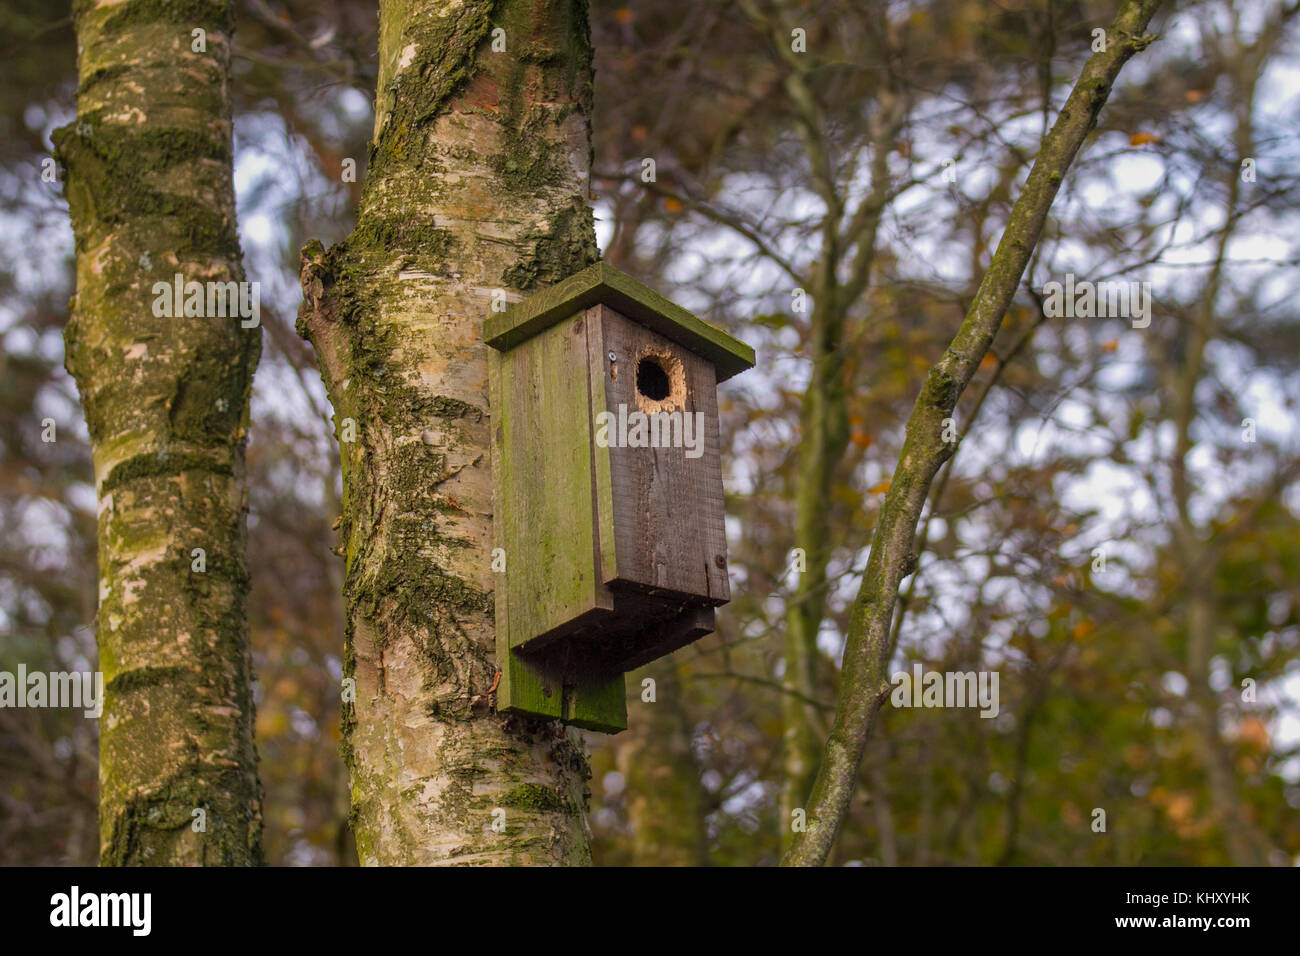 Woodland Bird Nest box; in legno antico, precedentemente utilizzato Bird scatole di nido nel bosco invernale, Southport, Regno Unito Foto Stock